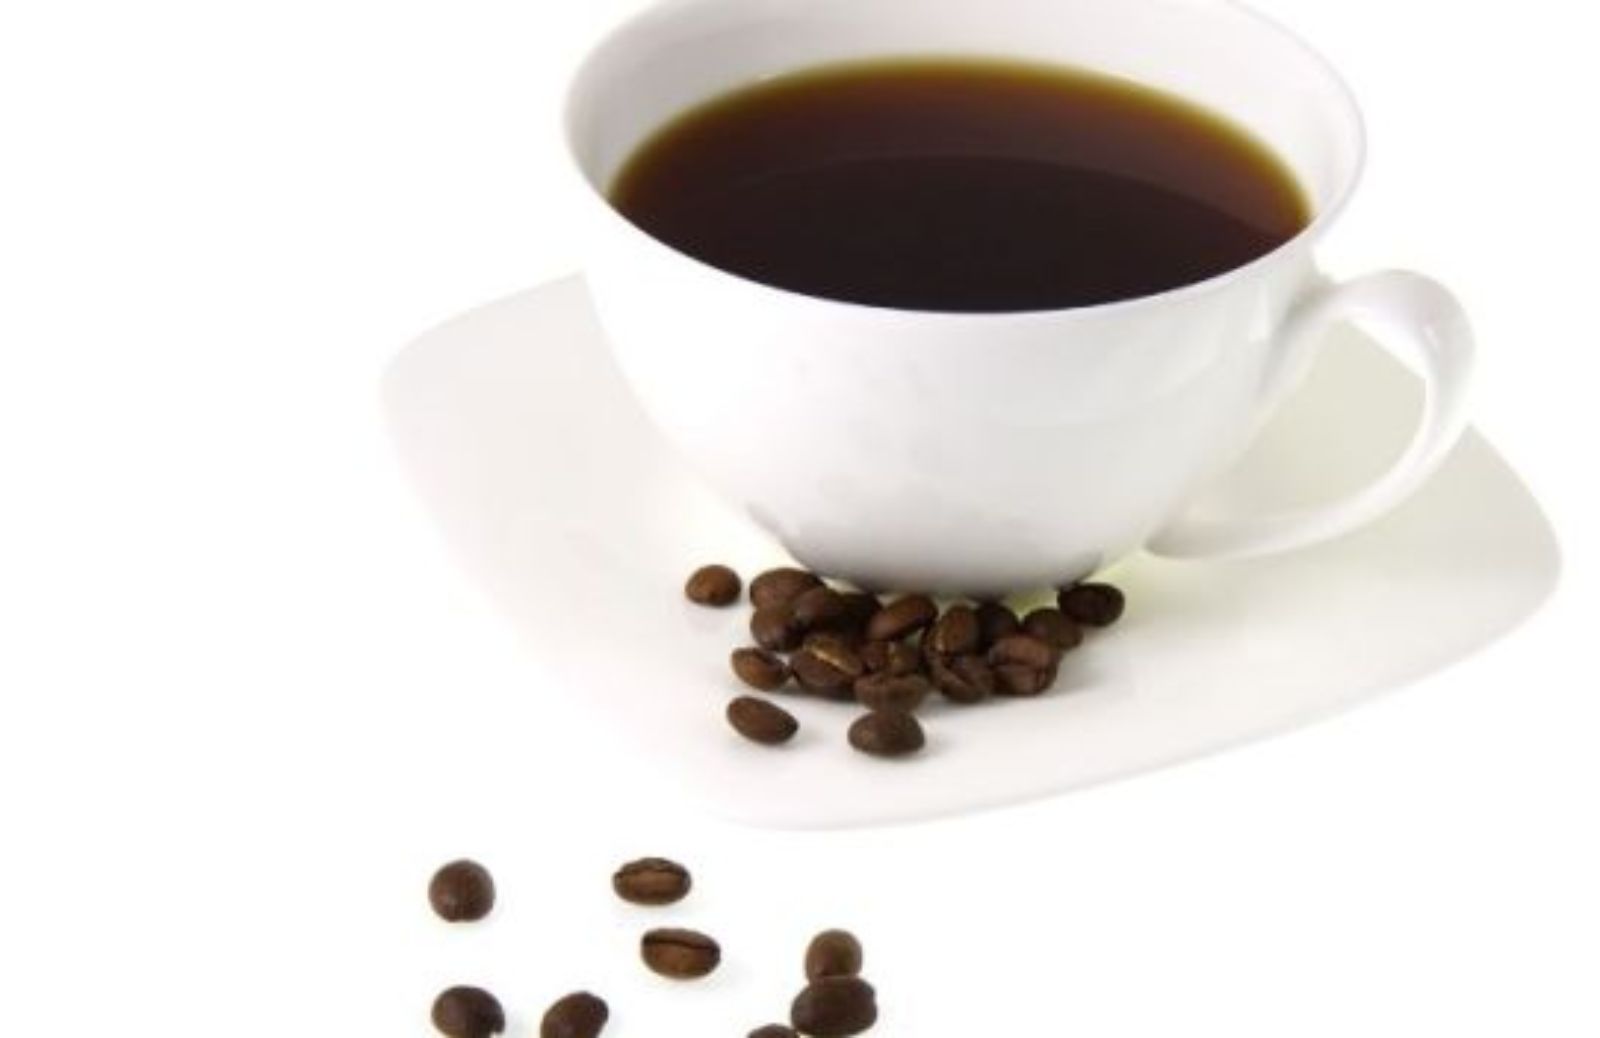 Come curarsi con il caffè: benefici e rischi - parte 2